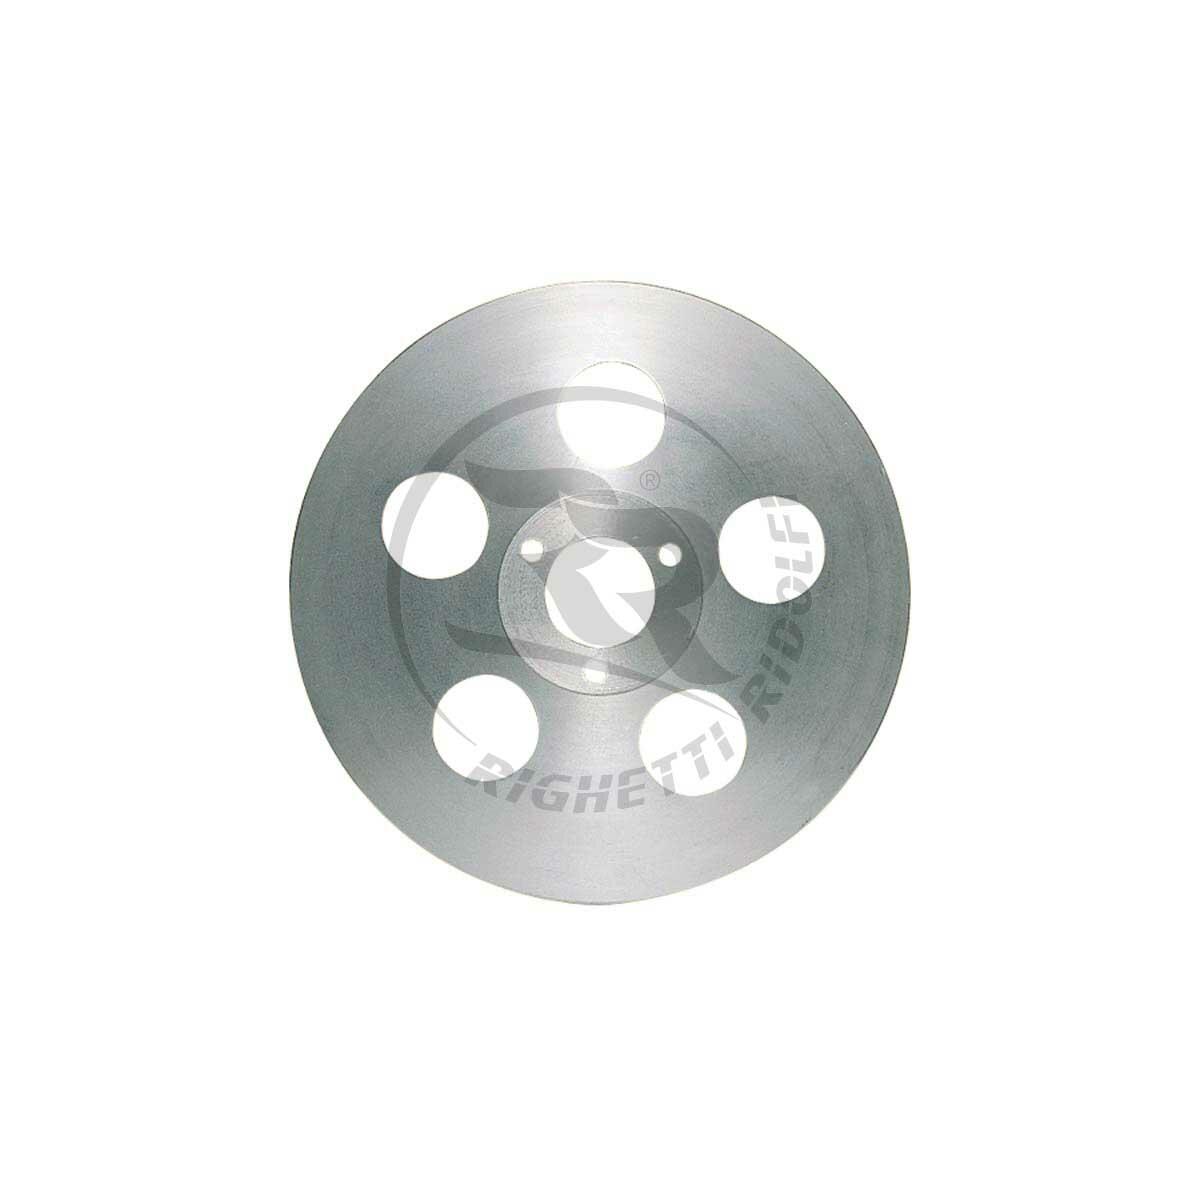 Righetti Set of 40mm Alignment Discs 3 holes